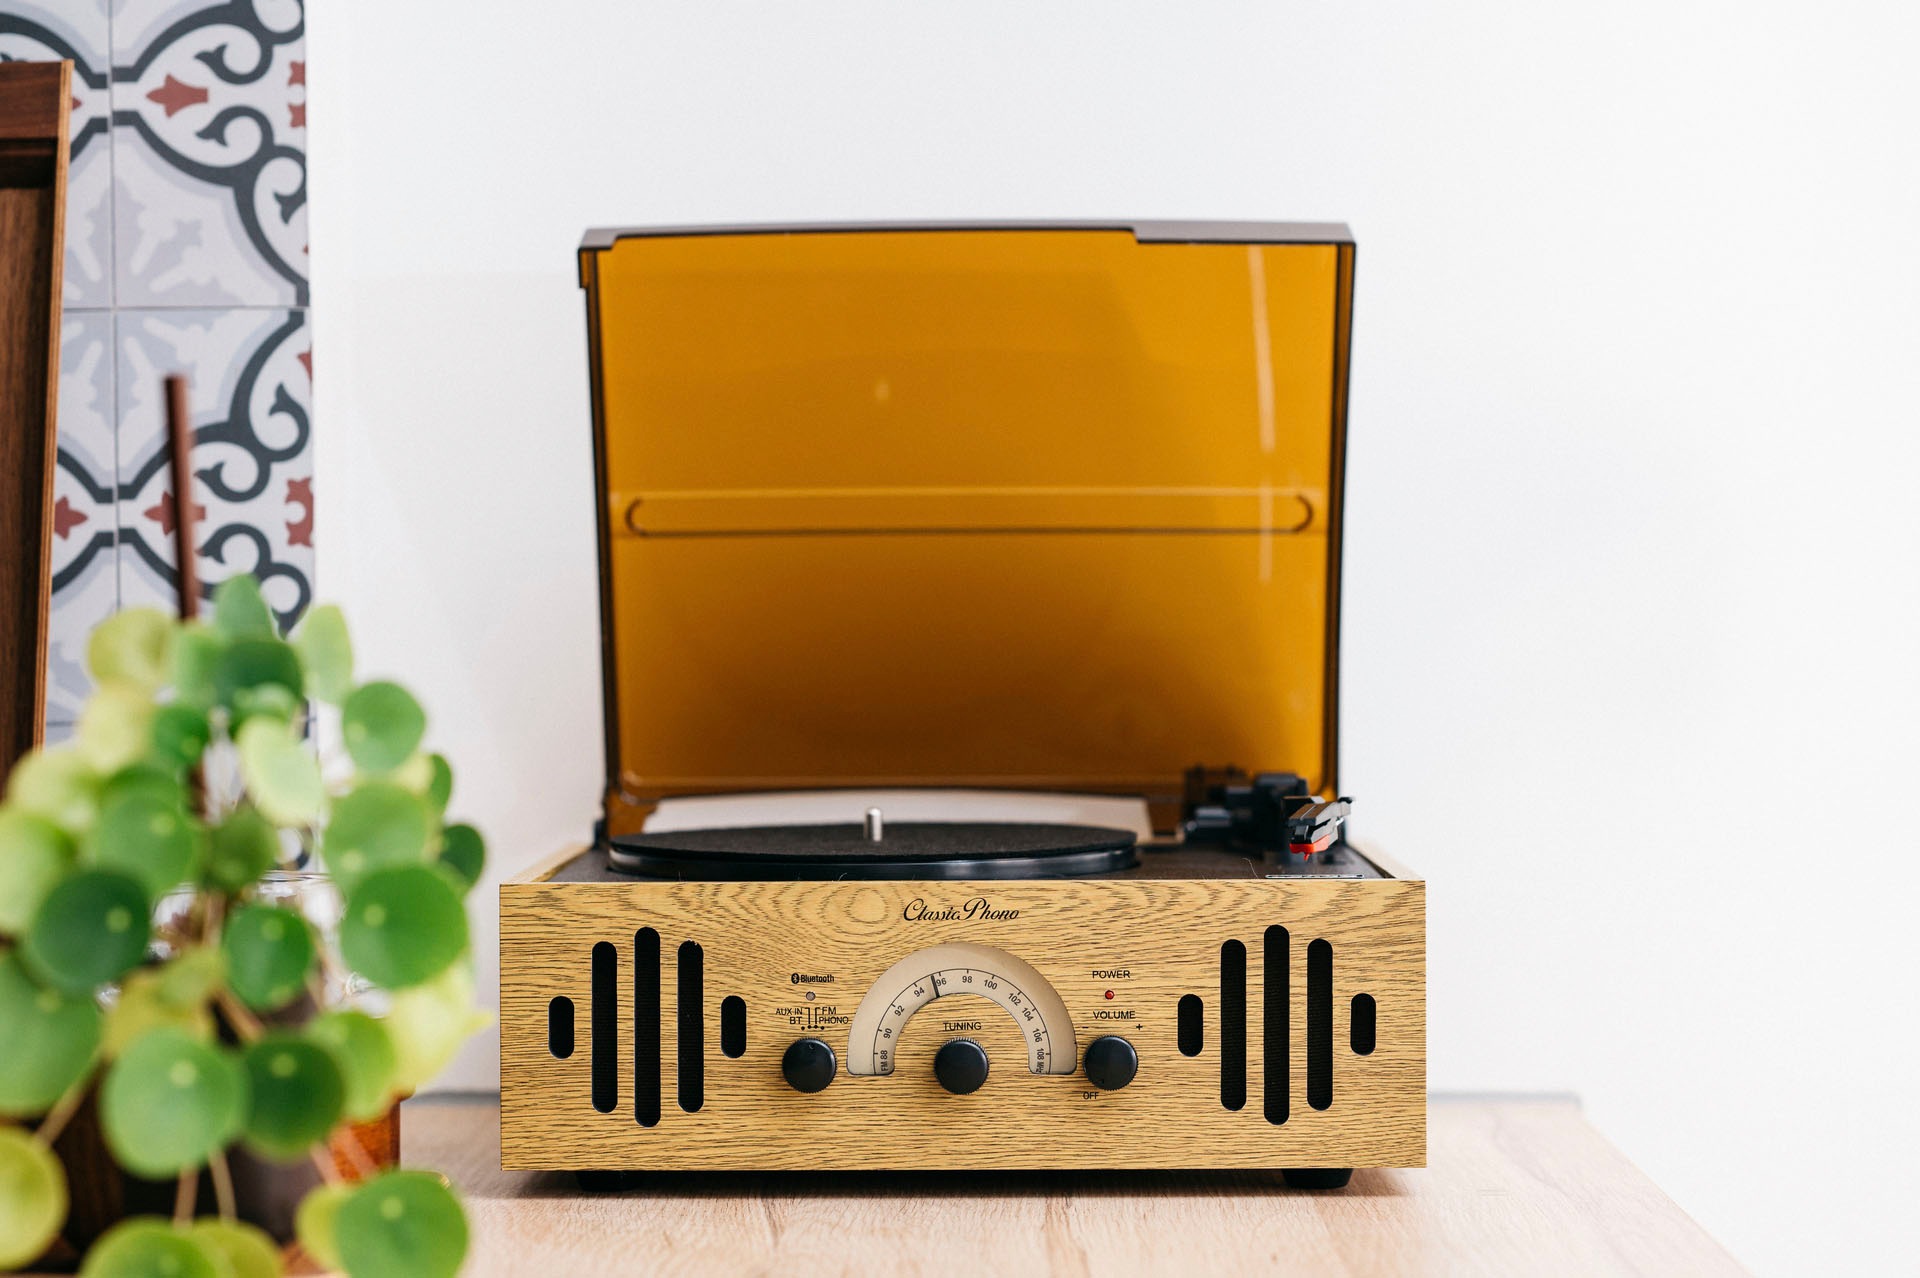 Lenco Plattenspieler »Classic Phono TT-41OK - Retro Plattenspieler« | BAUR | Plattenspieler